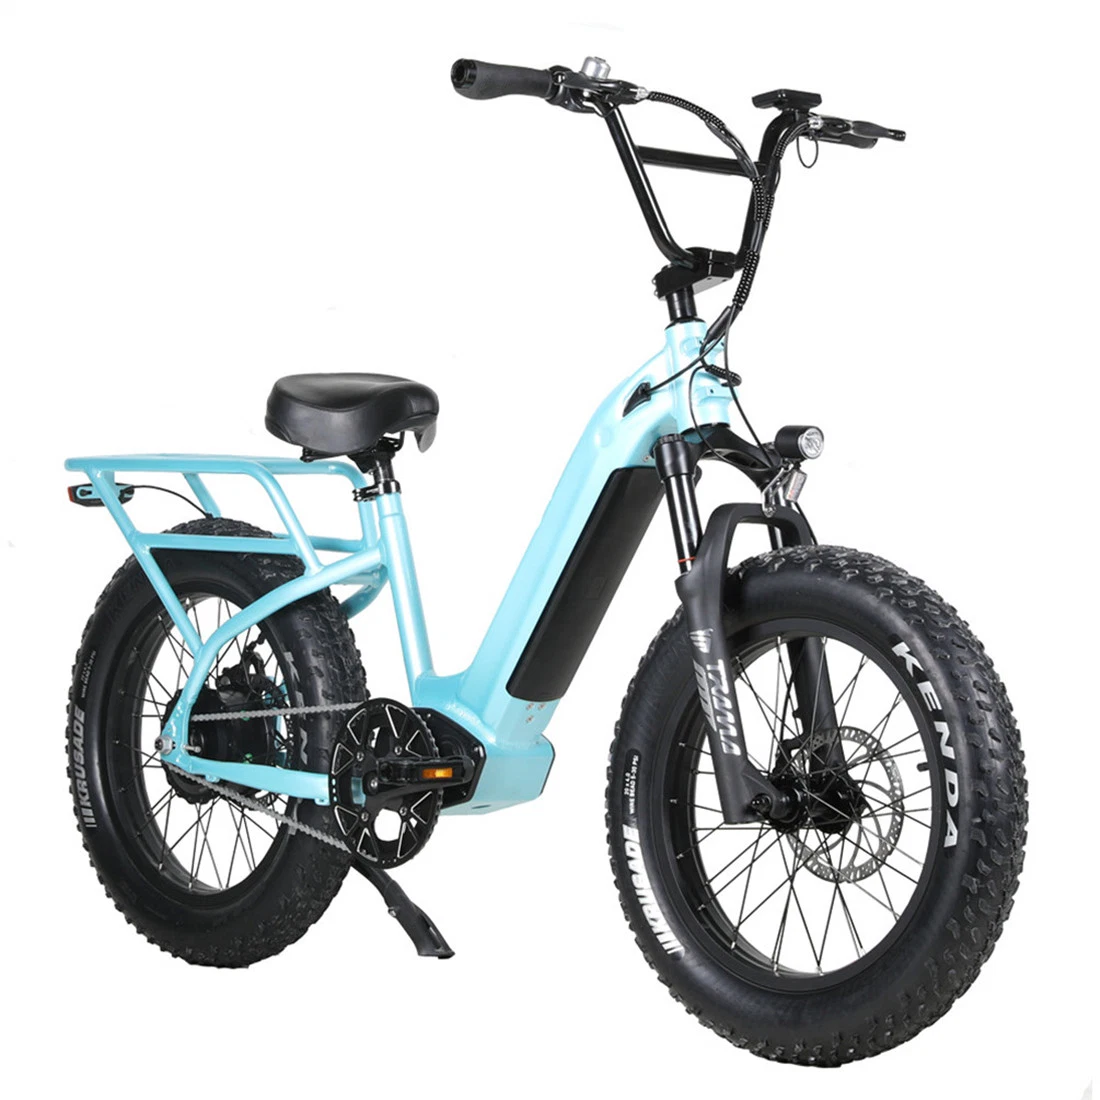 Nouveau design Vélo électrique mini 20 pouces avec cadre bas de 350W/500W/750W et une seule vitesse.